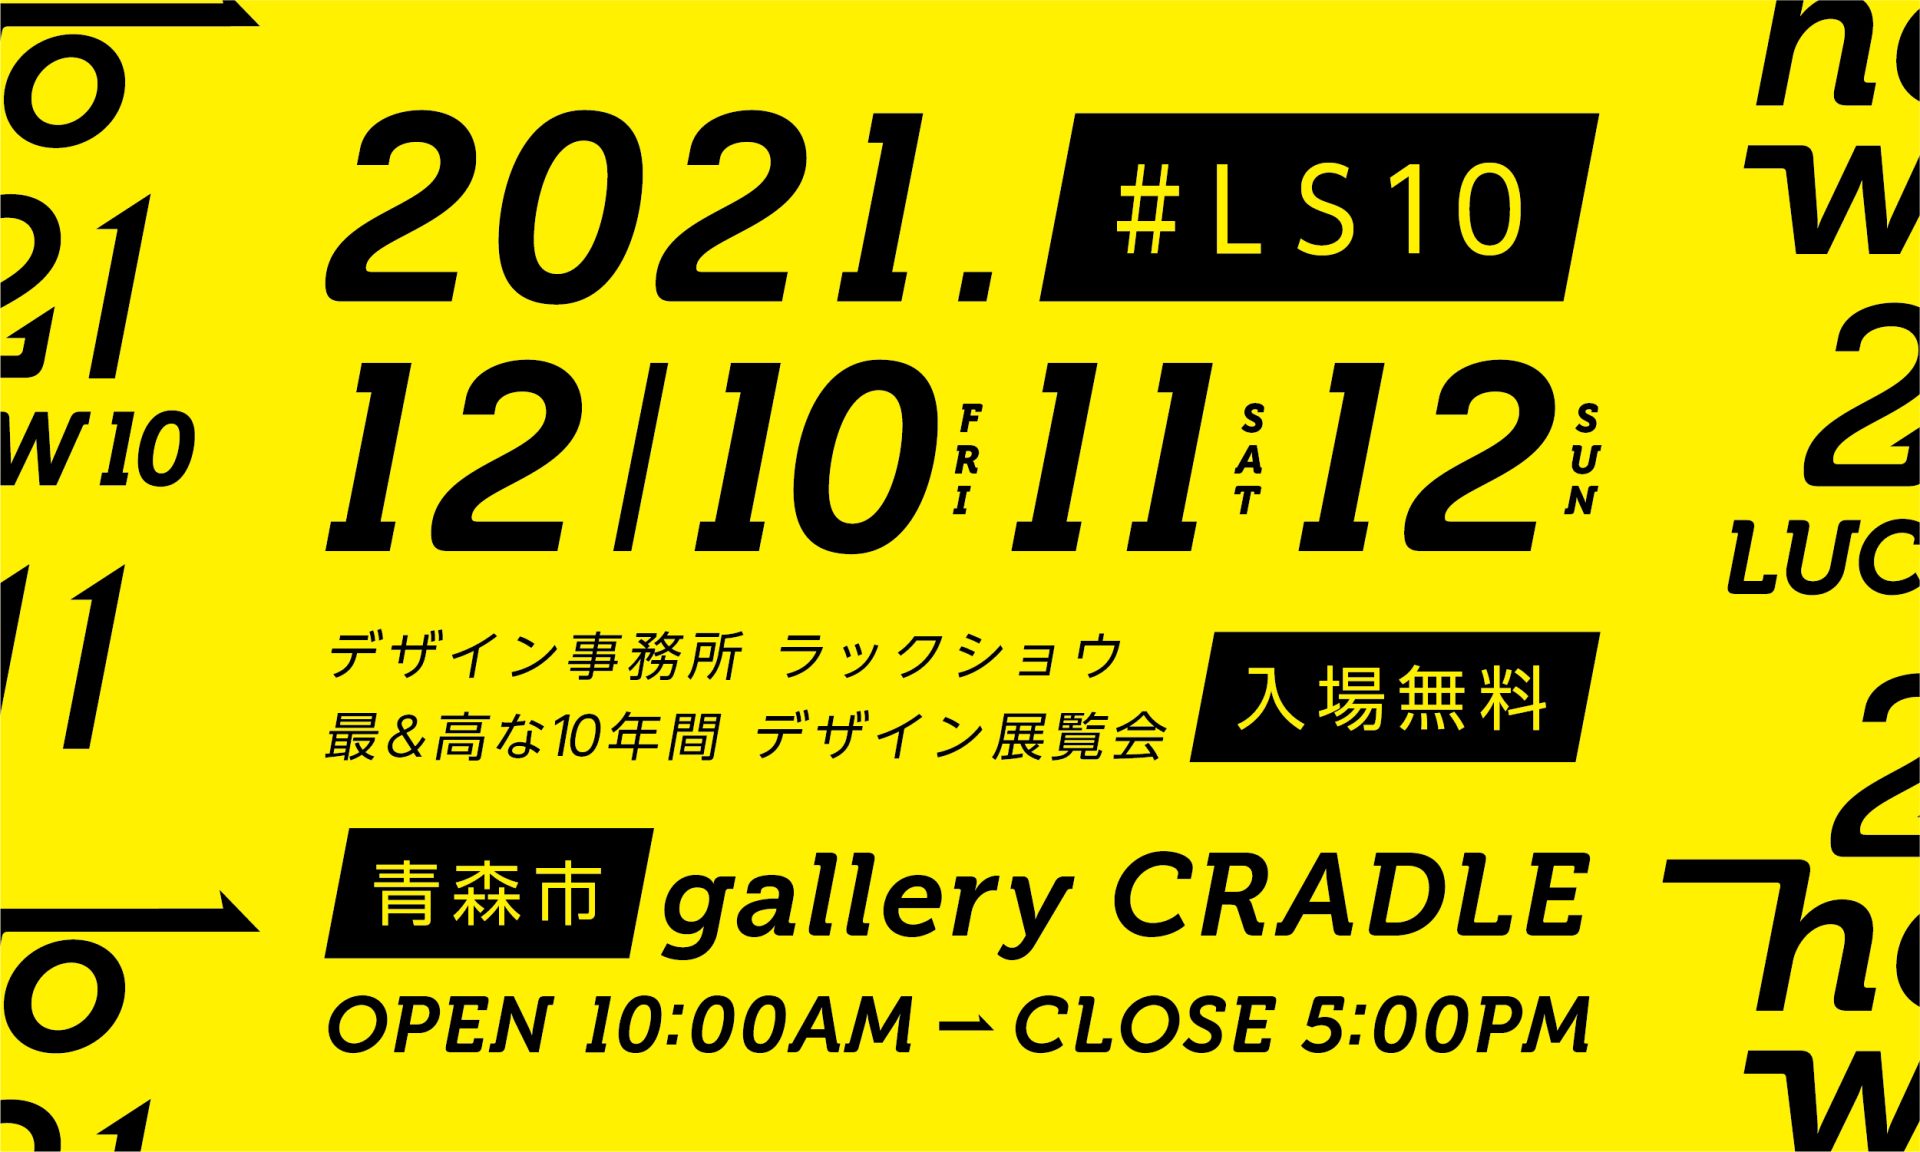 ［ デザイン ア テンション ! ］LUCK SHOW 10年間の軌跡を紹介する展覧会『 LUCK SHOW 10 ー 2011 here we go 2021 →』を、12月10日（金）から青森市「ギャラリー クレイドル」にて開催します。